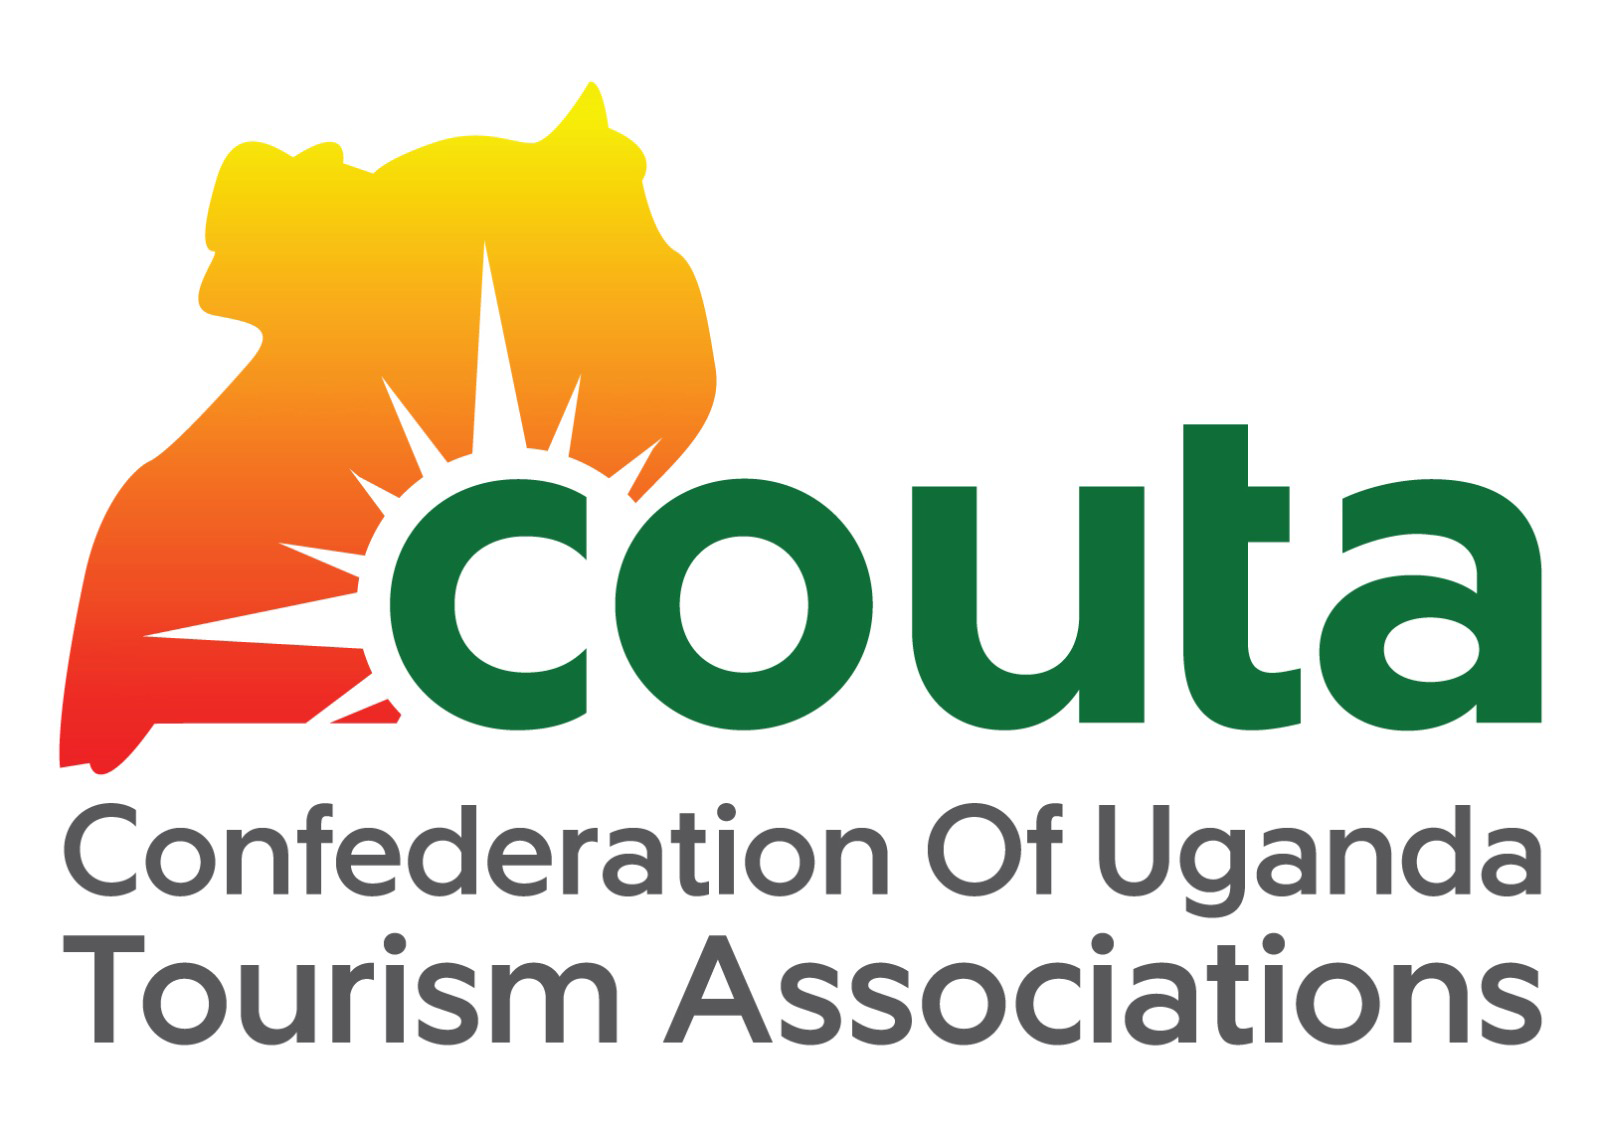 Confederation of Uganda Tourism Association